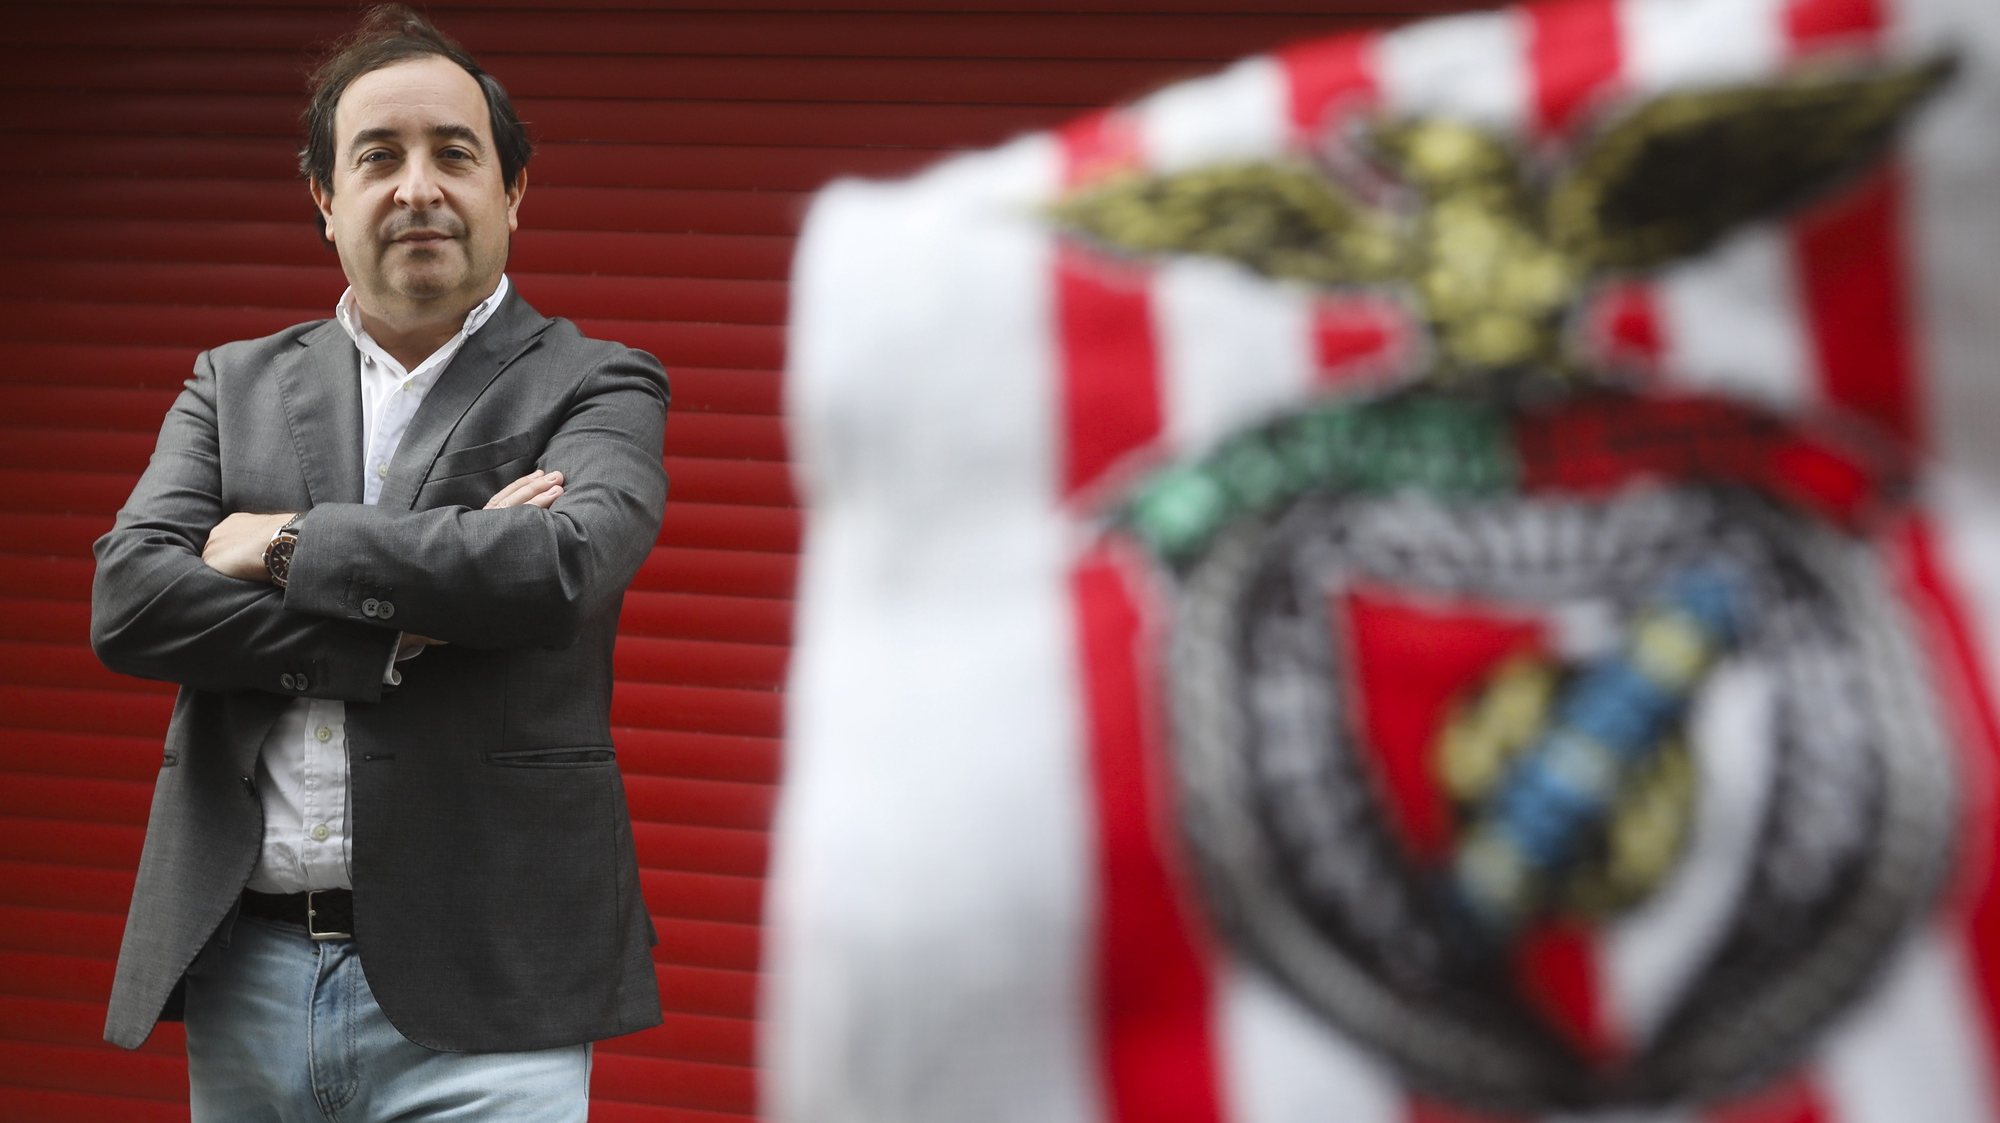 Bruno Costa Carvalho, candidato à presidência do Sport Lisboa e Benfica, posa para a fotografia durante uma entrevista à agência Lusa, no Porto, 24 de outubro de 2020. (ACOMPANHA TEXTO DA LUSA DO DIA 27 DE OUTUBRO DE 2020). JOSÉ COELHO/LUSA